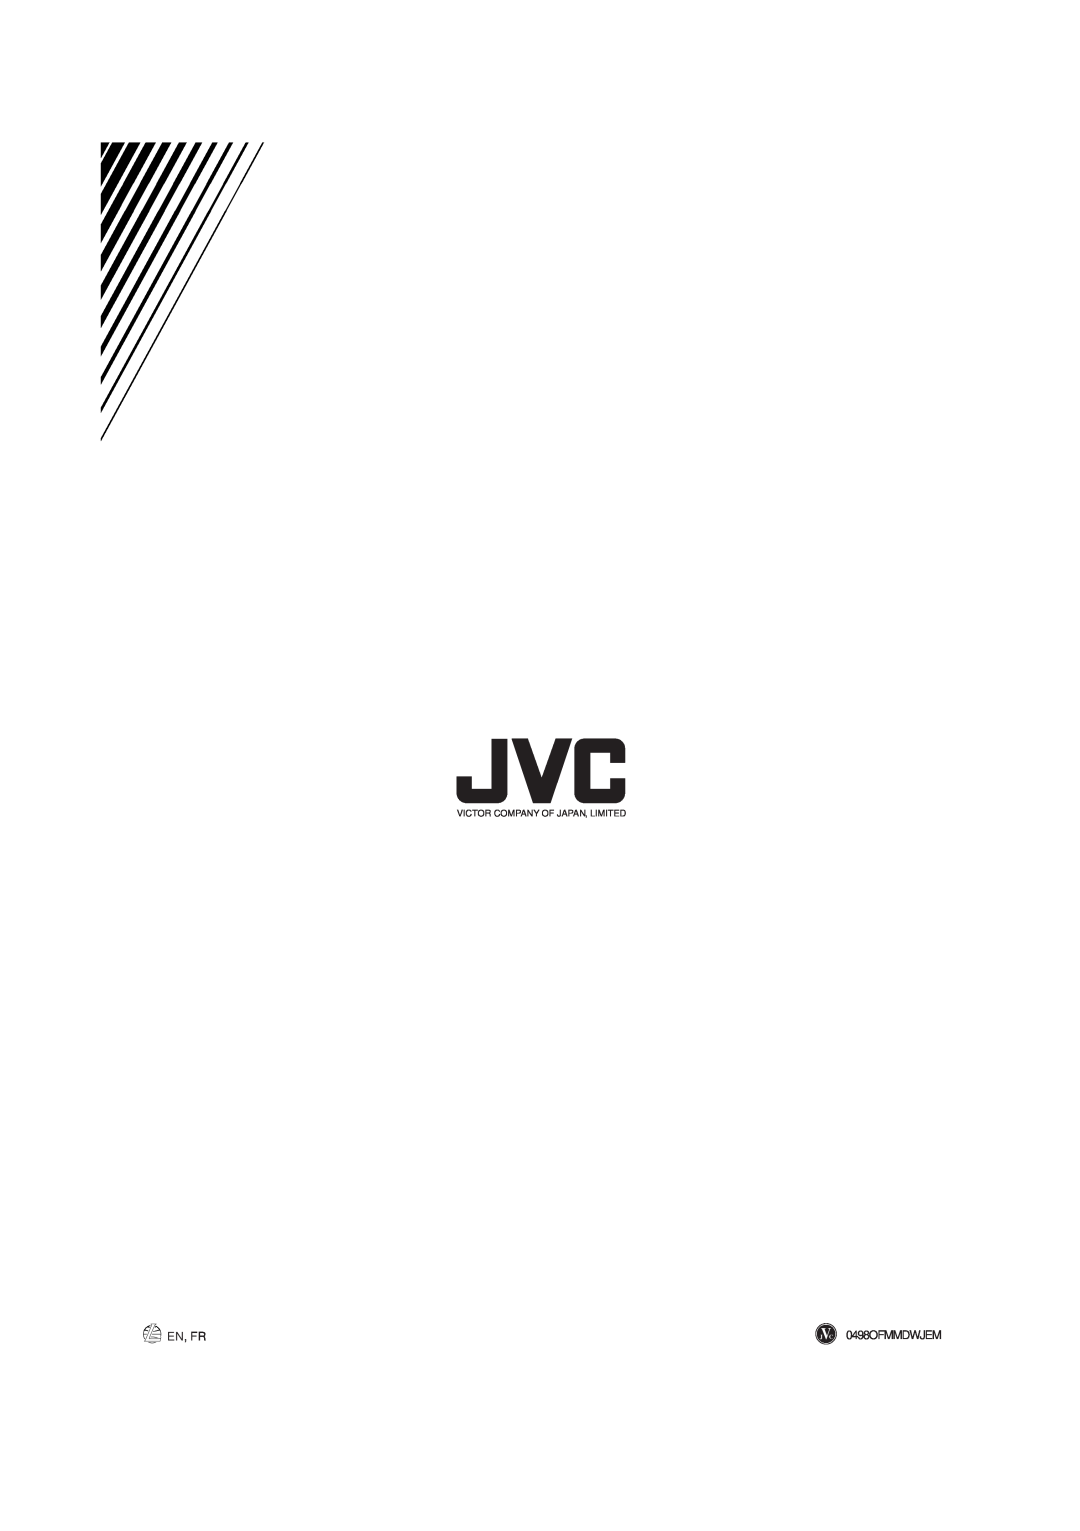 JVC RX-665VBK manual En, Fr, 0498OFMMDWJEM 